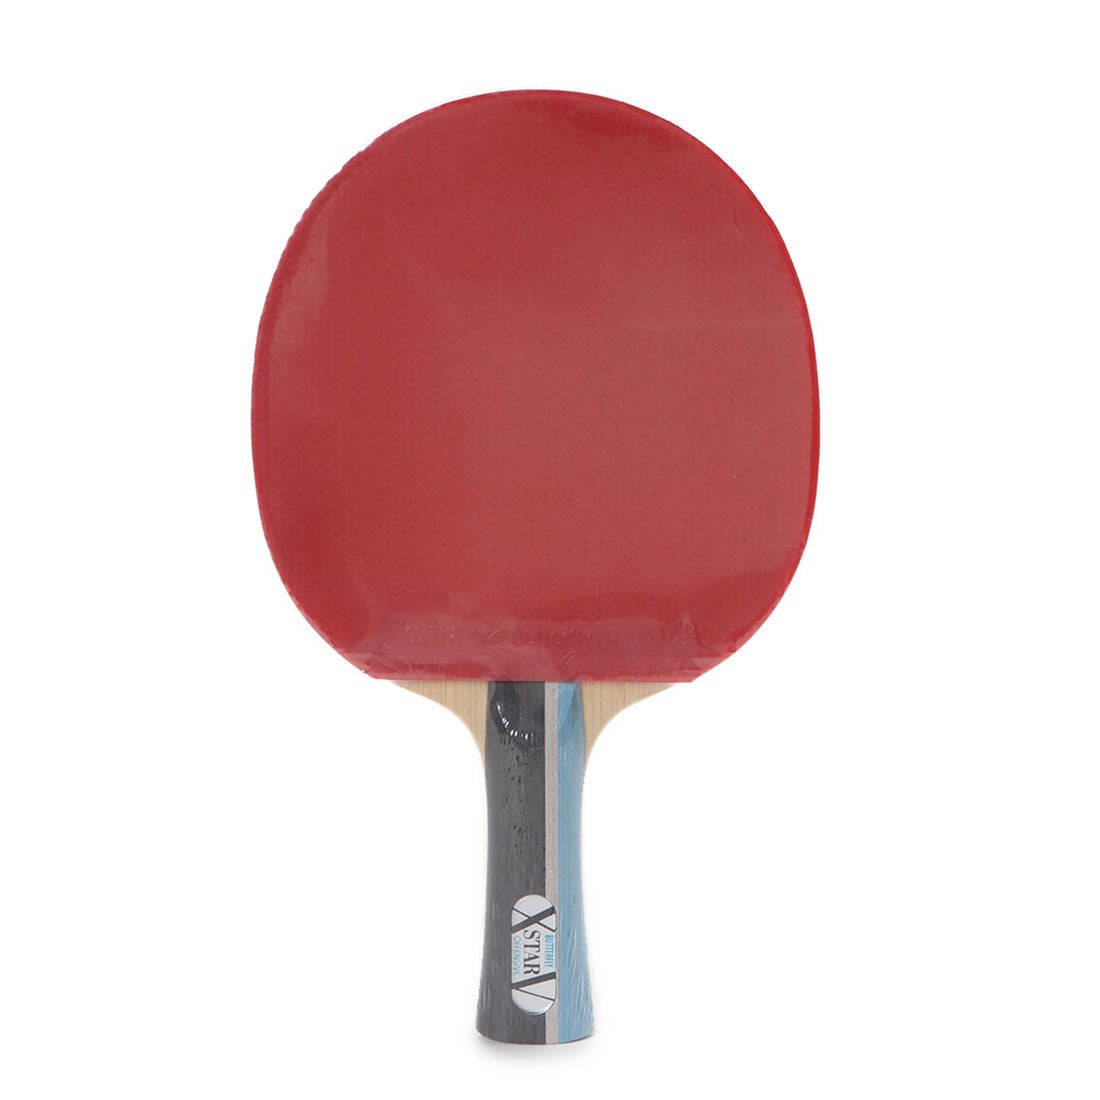 バタフライ Butterfly 卓球 ラケット アルペンスポーツデポ限定 スターターセット 2020年 エクスターV 貼り合わせ加工済み レッド  17000ST1